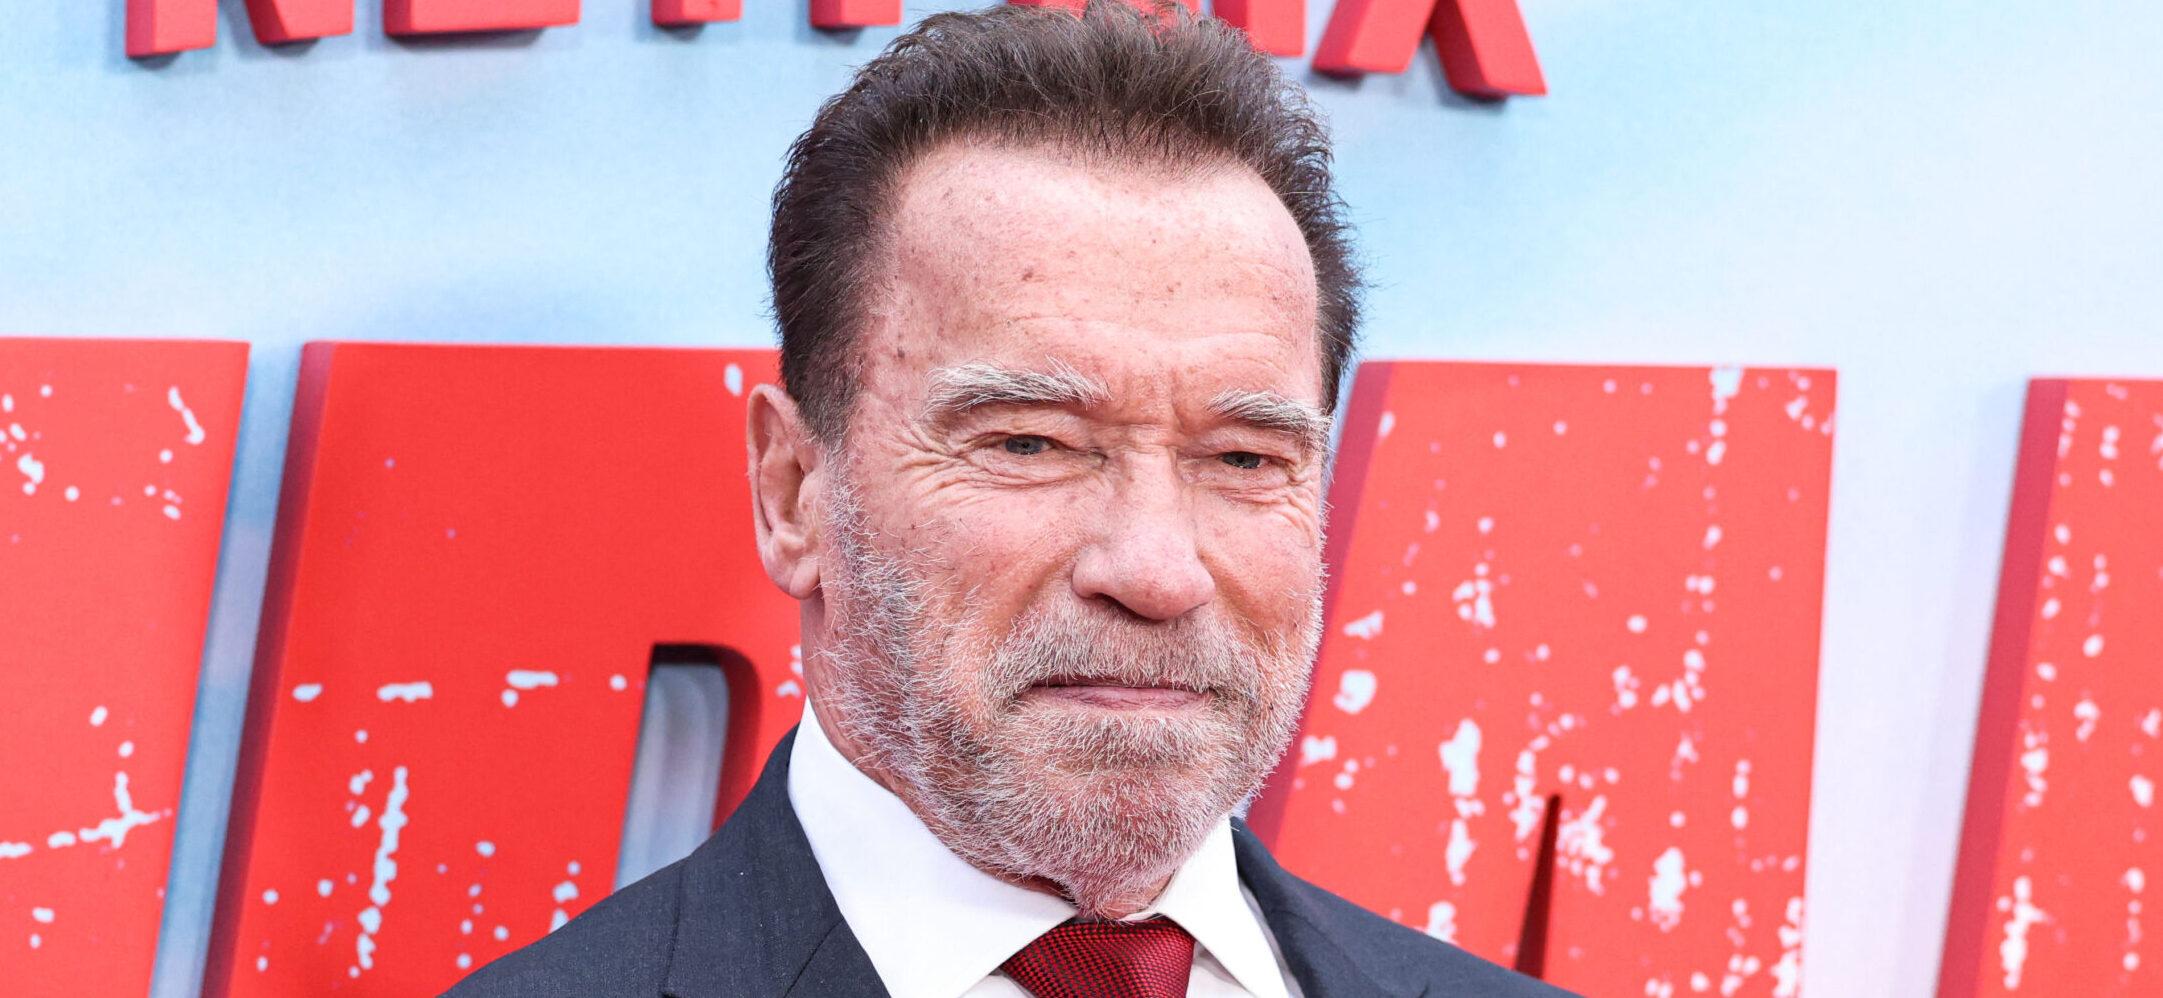 Arnold Schwarzenegger Under Criminal Investigation In Munich, Germany